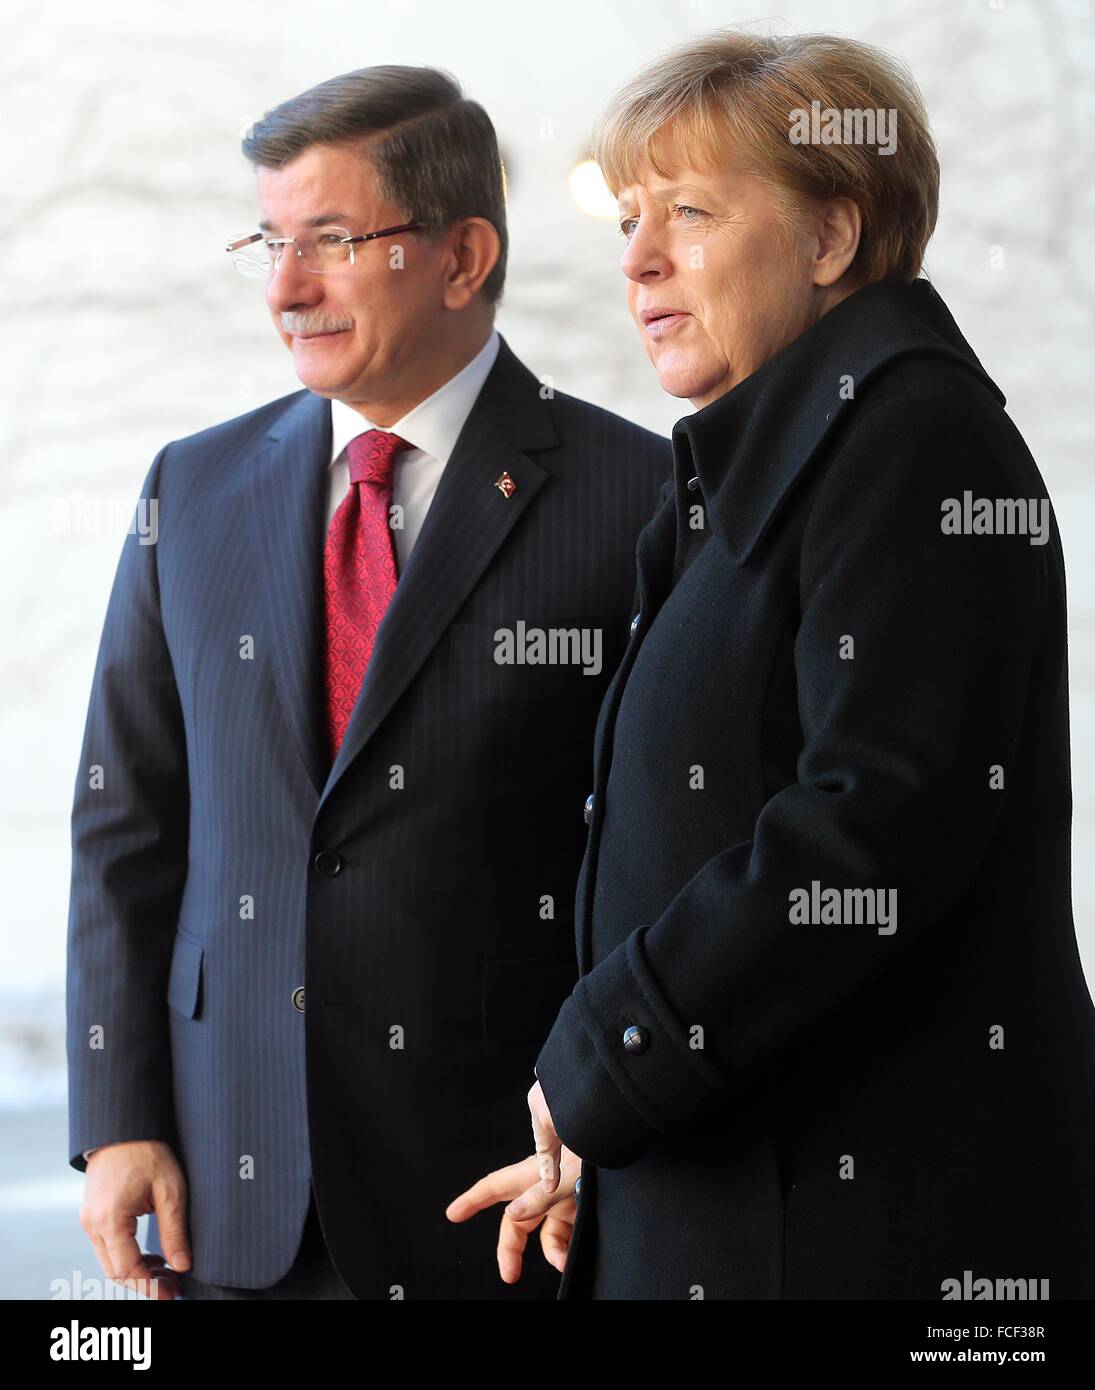 Berlin, Allemagne. 22 janvier, 2016. La chancelière Angela Merkel (CDU) reçoit le premier ministre de la Turquie, Ahmet Davutoglu, avec un l'honneur militaire, à la Chancellerie fédérale à Berlin, Allemagne, 22 janvier 2016. Les discussions au cours de la première des consultations intergouvernementales germano-turque se concentrer sur des sujets tels que la lutte contre le terrorisme et la politique des réfugiés. PHOTO : WOLFGANG KUMM/dpa/Alamy Live News Banque D'Images